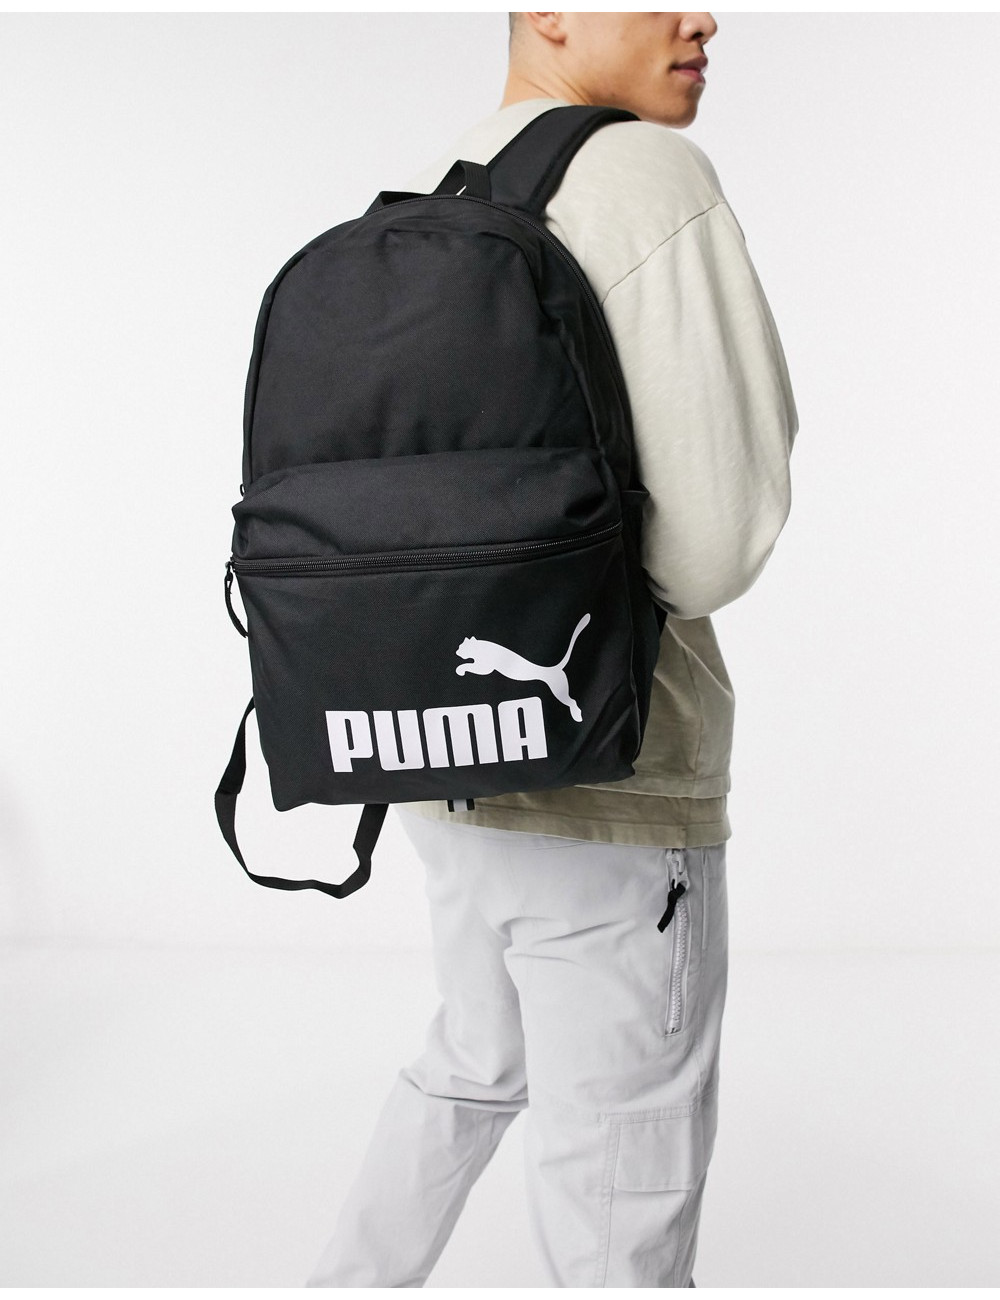 Puma Phase backpack in black